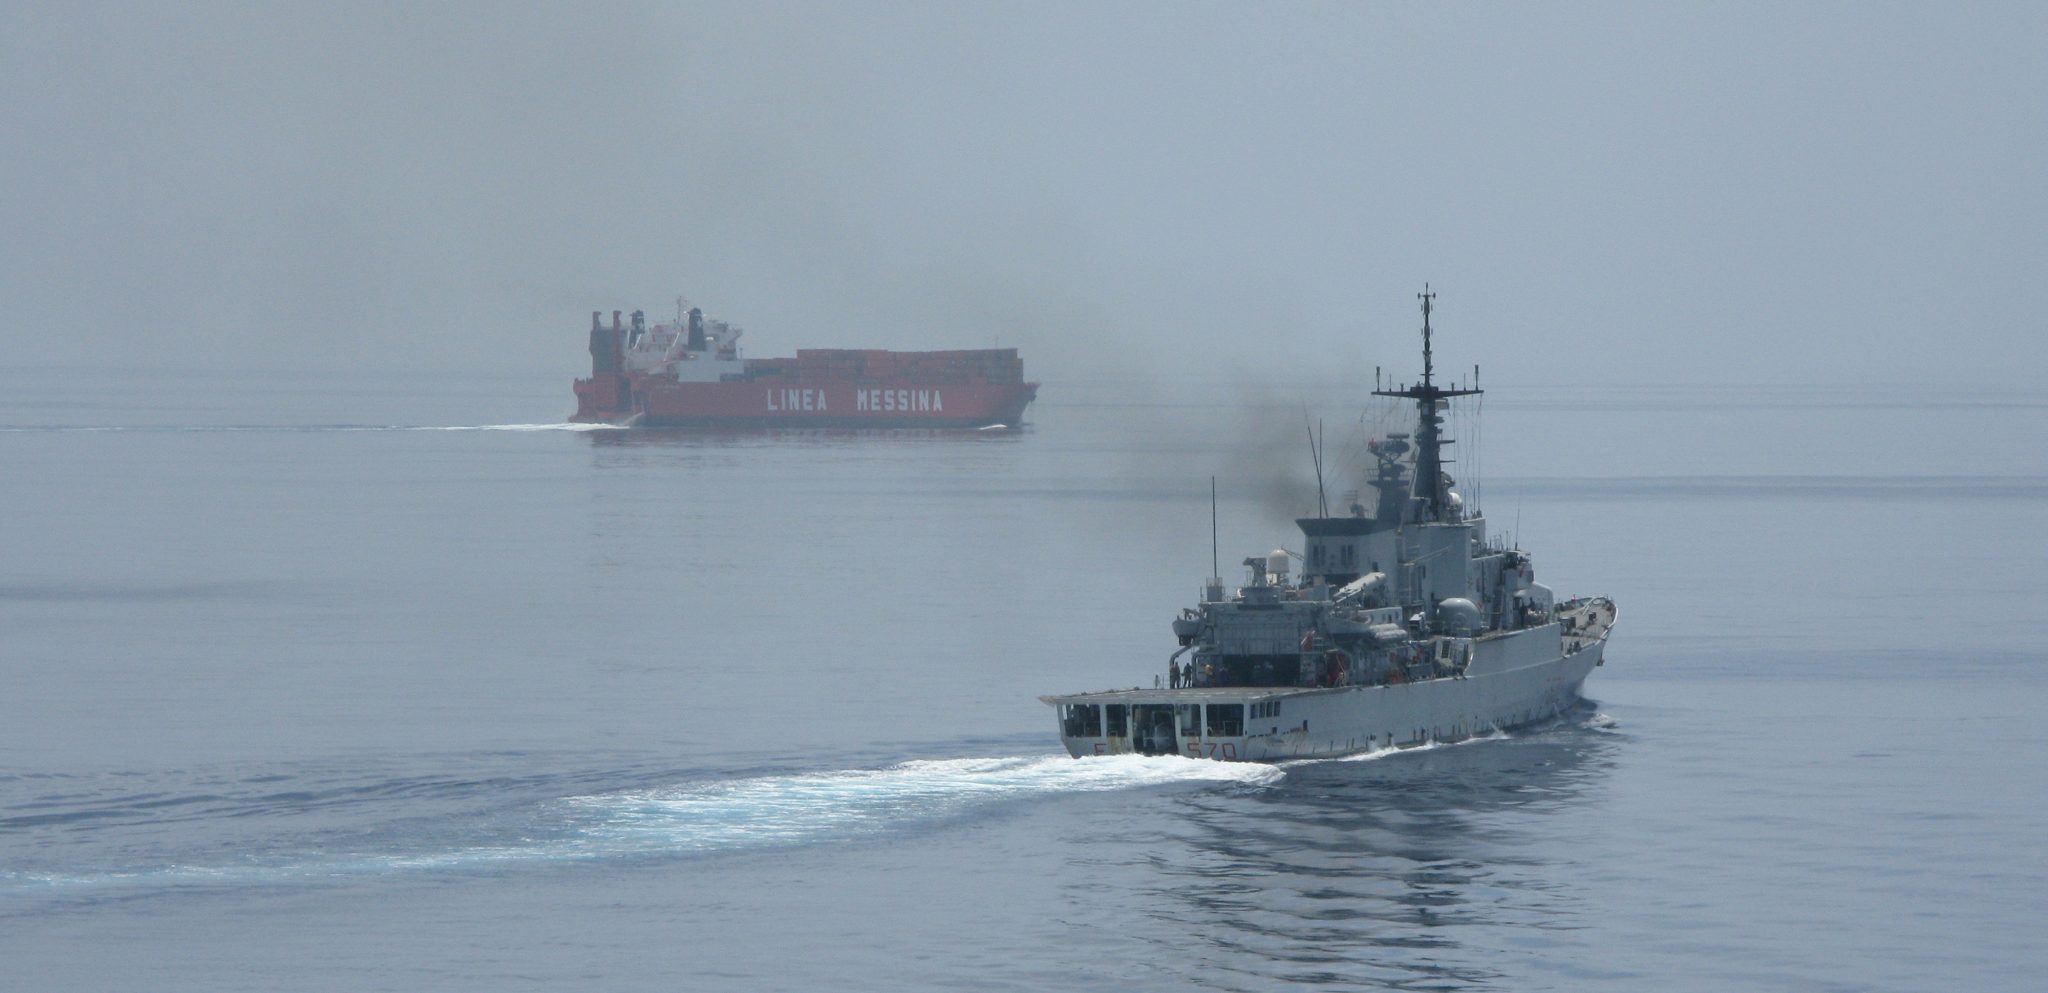 La fregata "Maestrale" (F570) della Marina Militare scorta un mercantile italiano durante gli anni '90. La nave partecipò alla missione "Golfo 2" nel 1990-91.